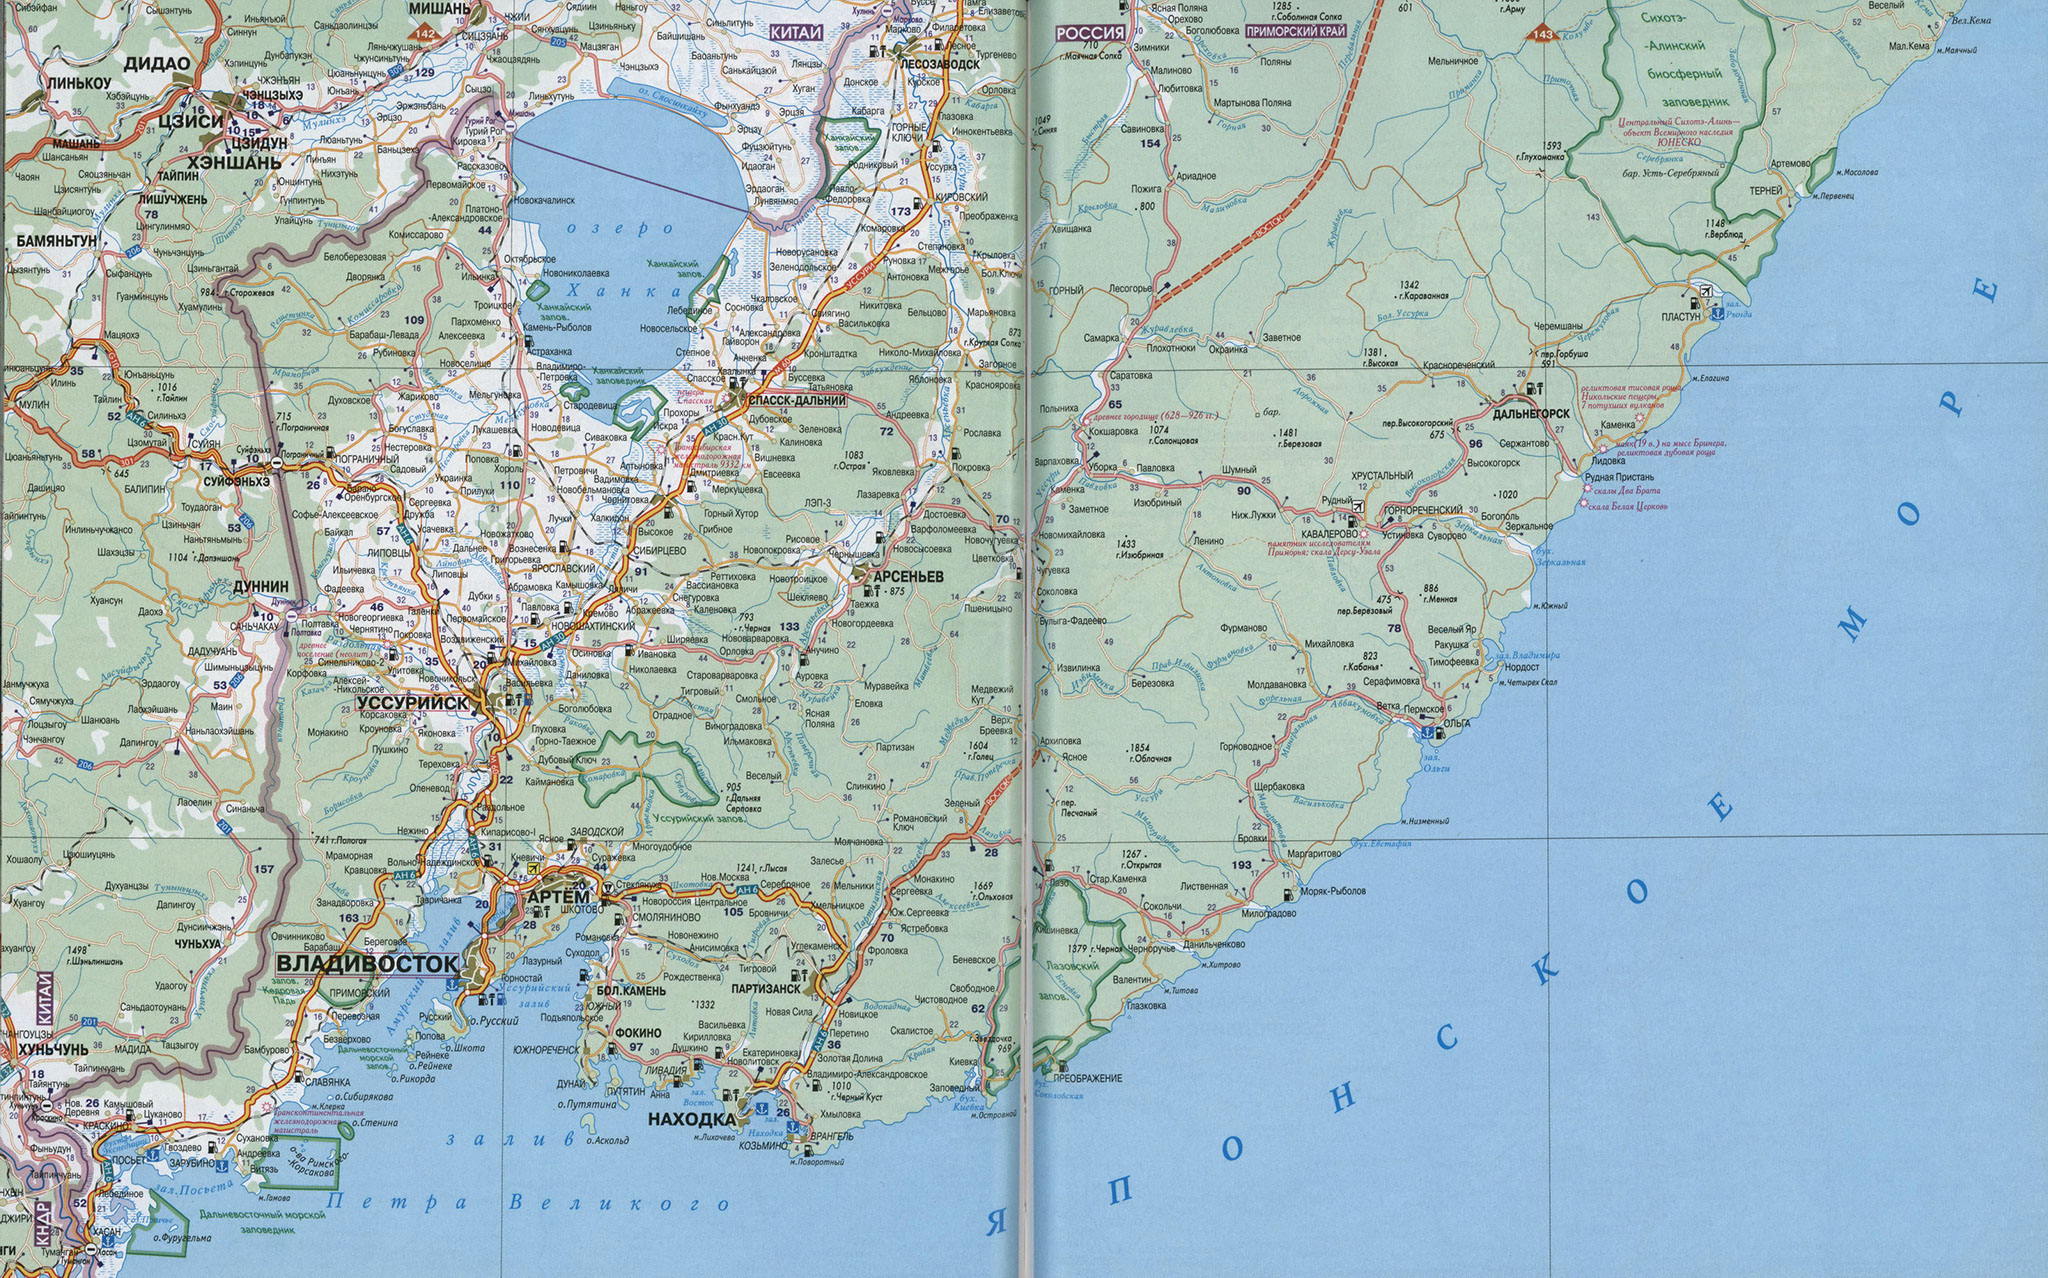 Карта южного побережья россии с городами